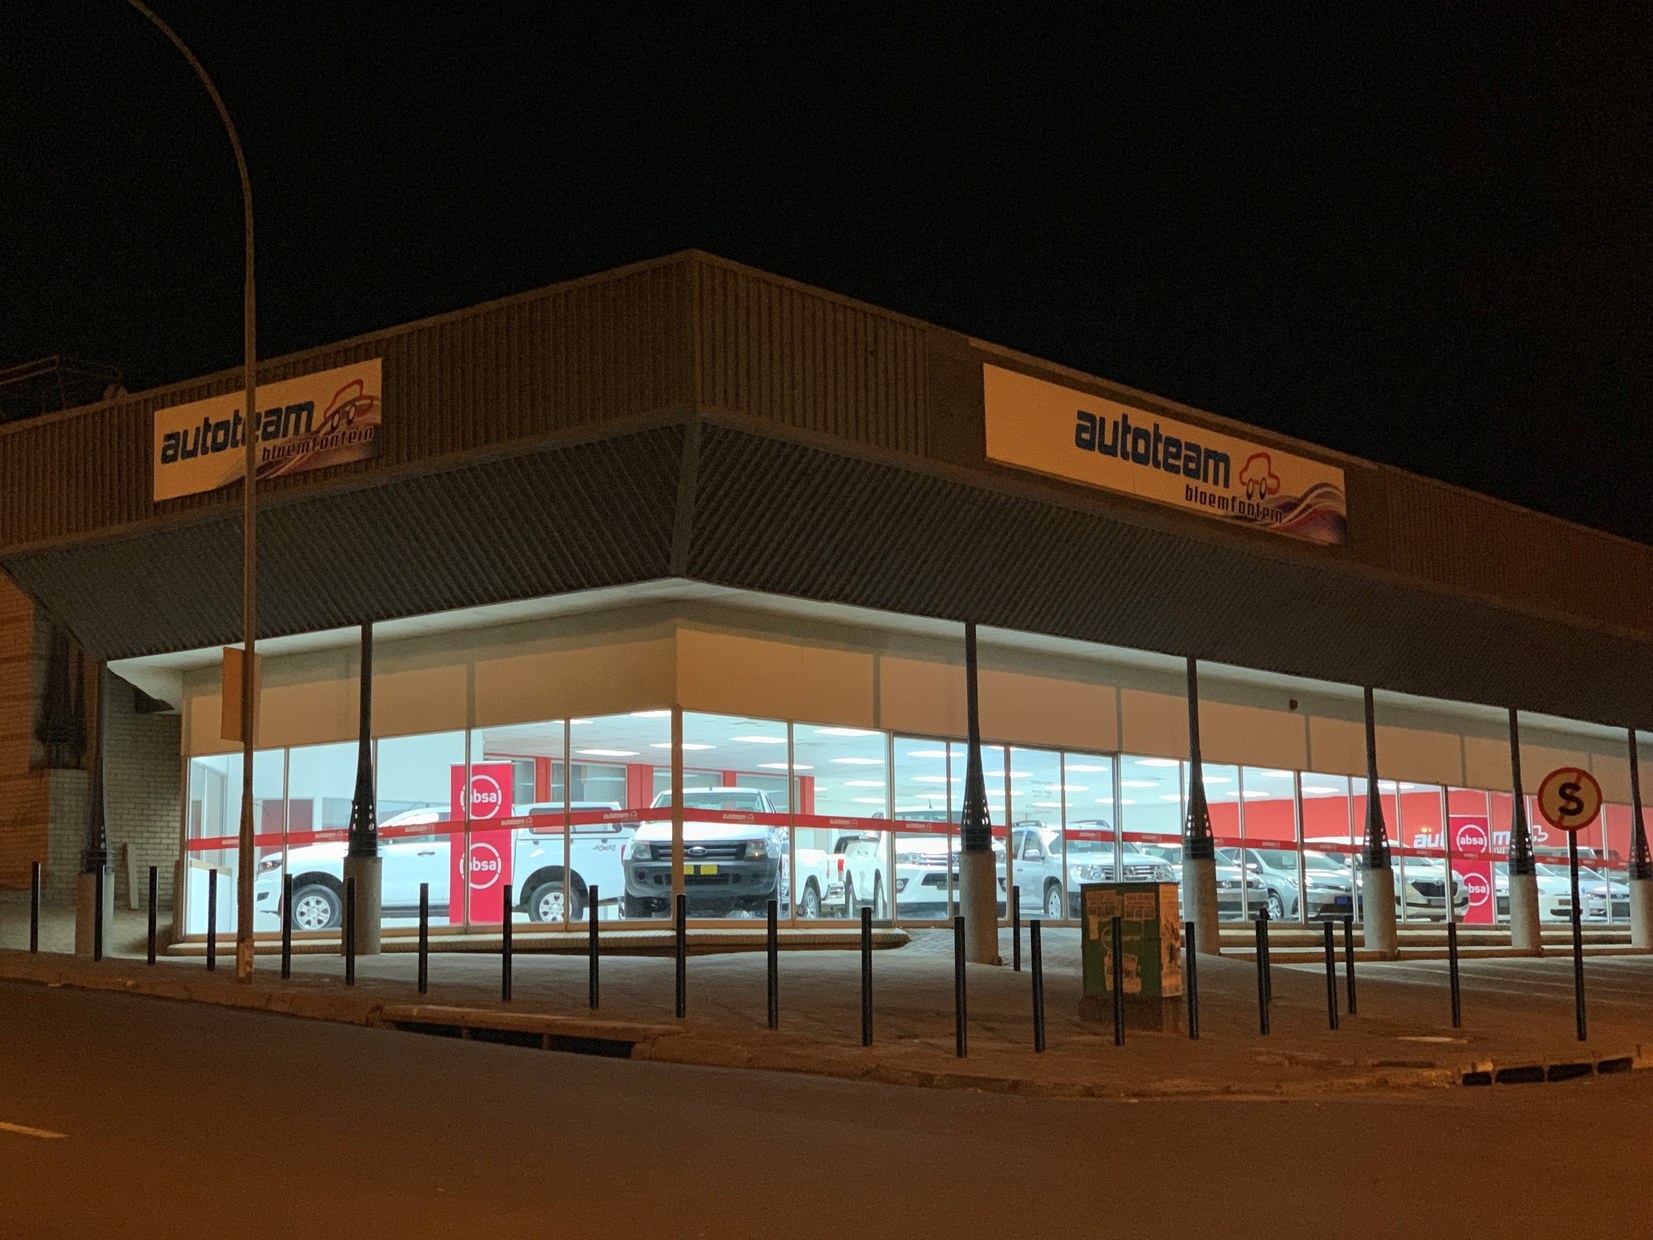 Autoteam dealership in Bloemfontein